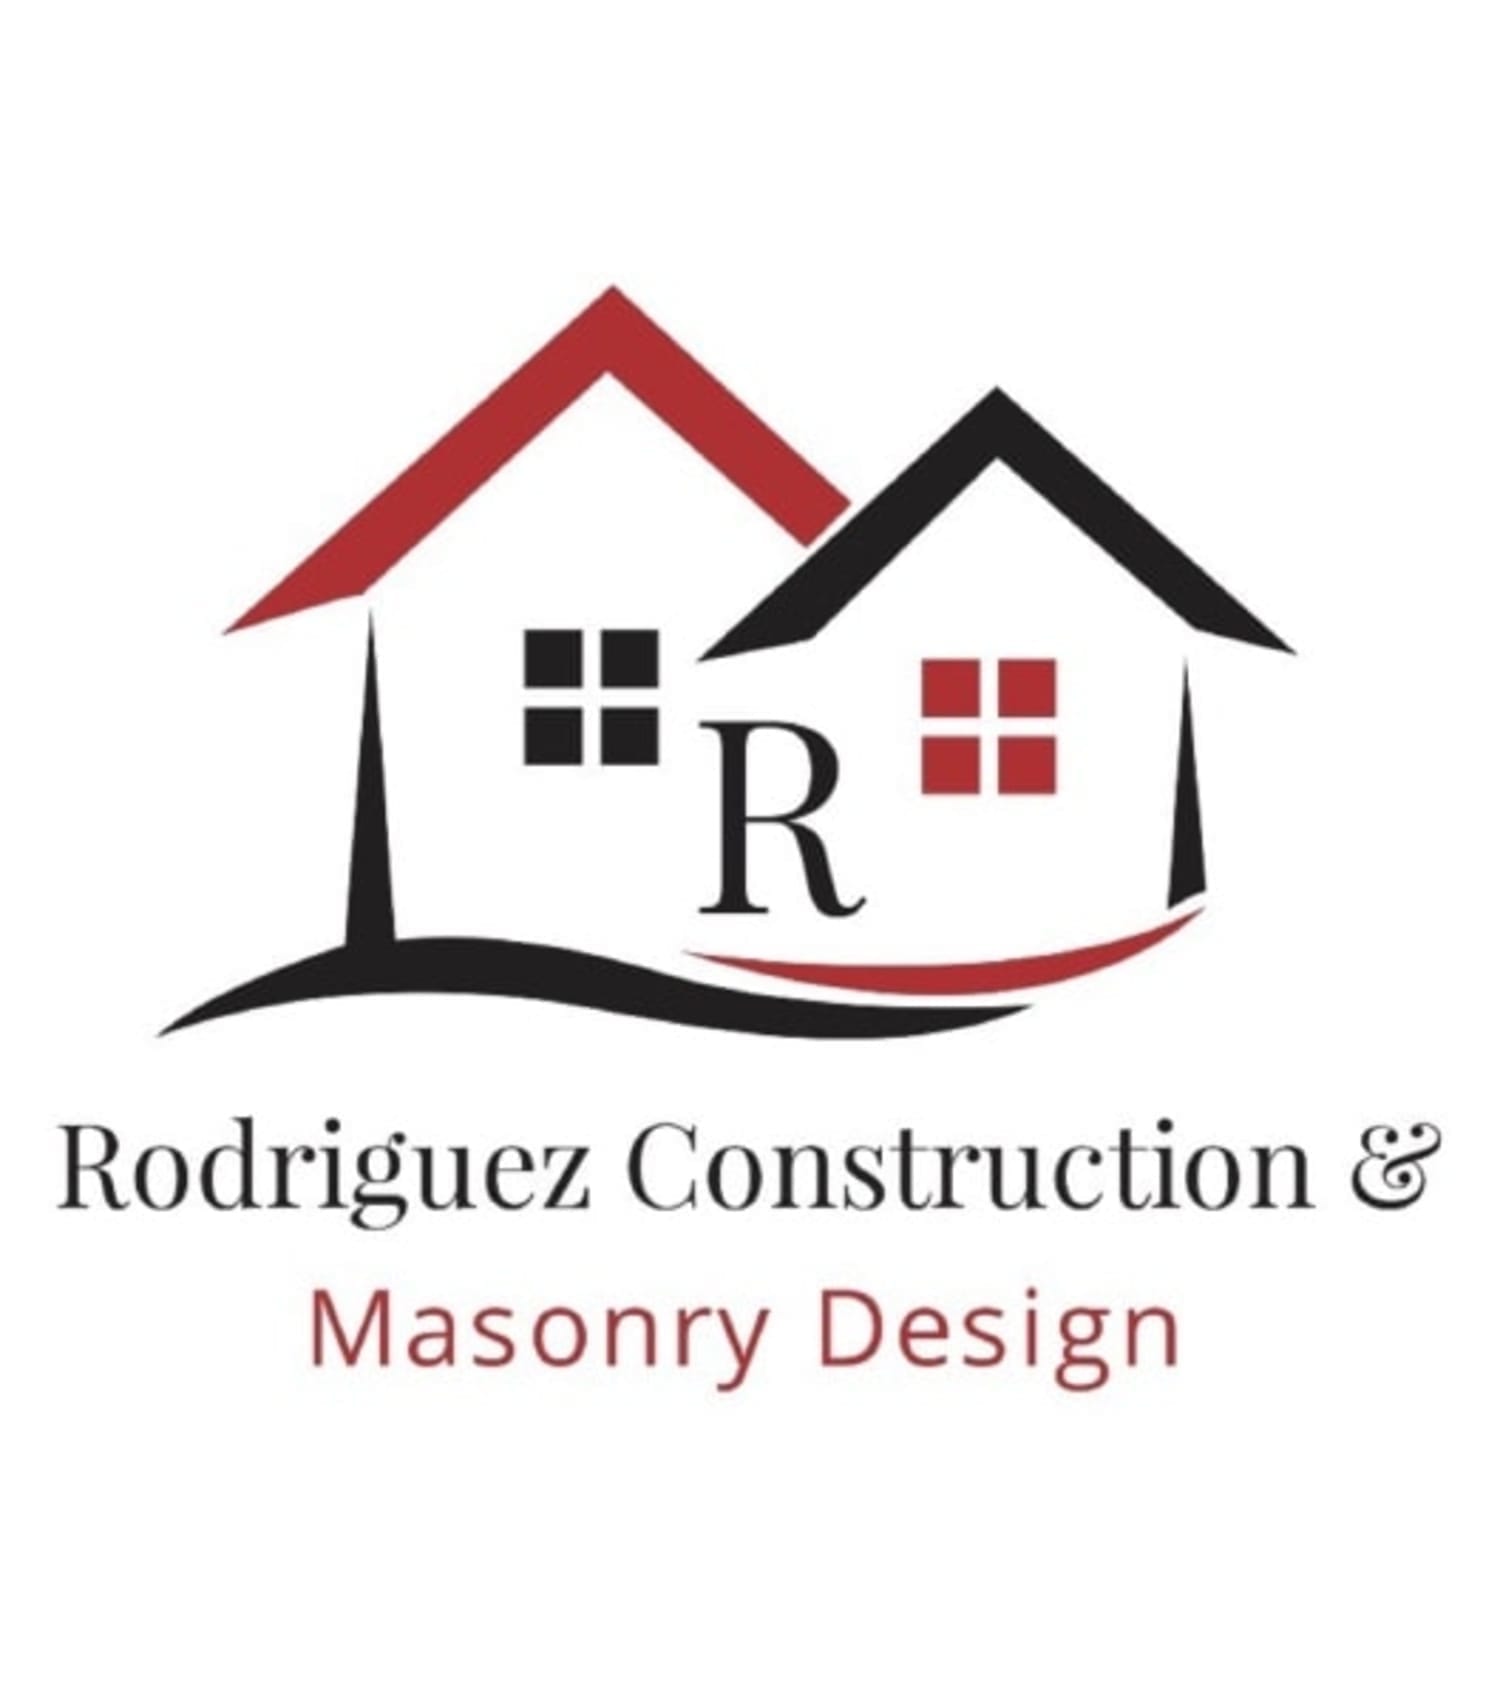 Rodriguez Construction & Masonry Design